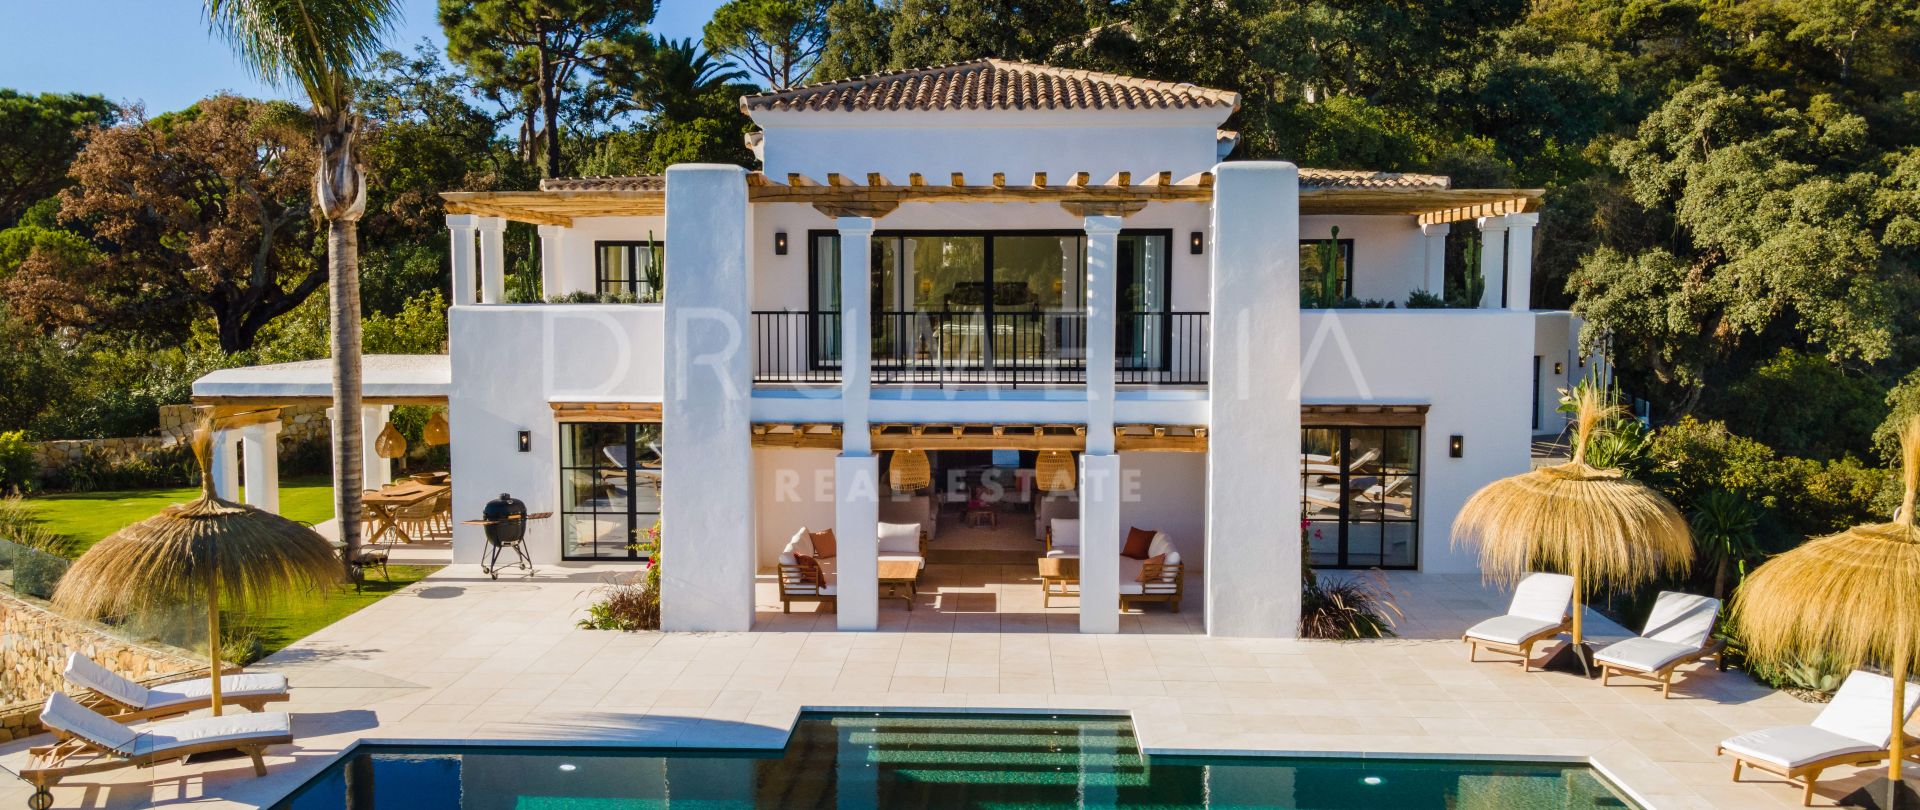 Villa Vittoria - Отремонтированная элитная вилла со стильным интерьером и видом на море, El Madroñal, Бенахавис